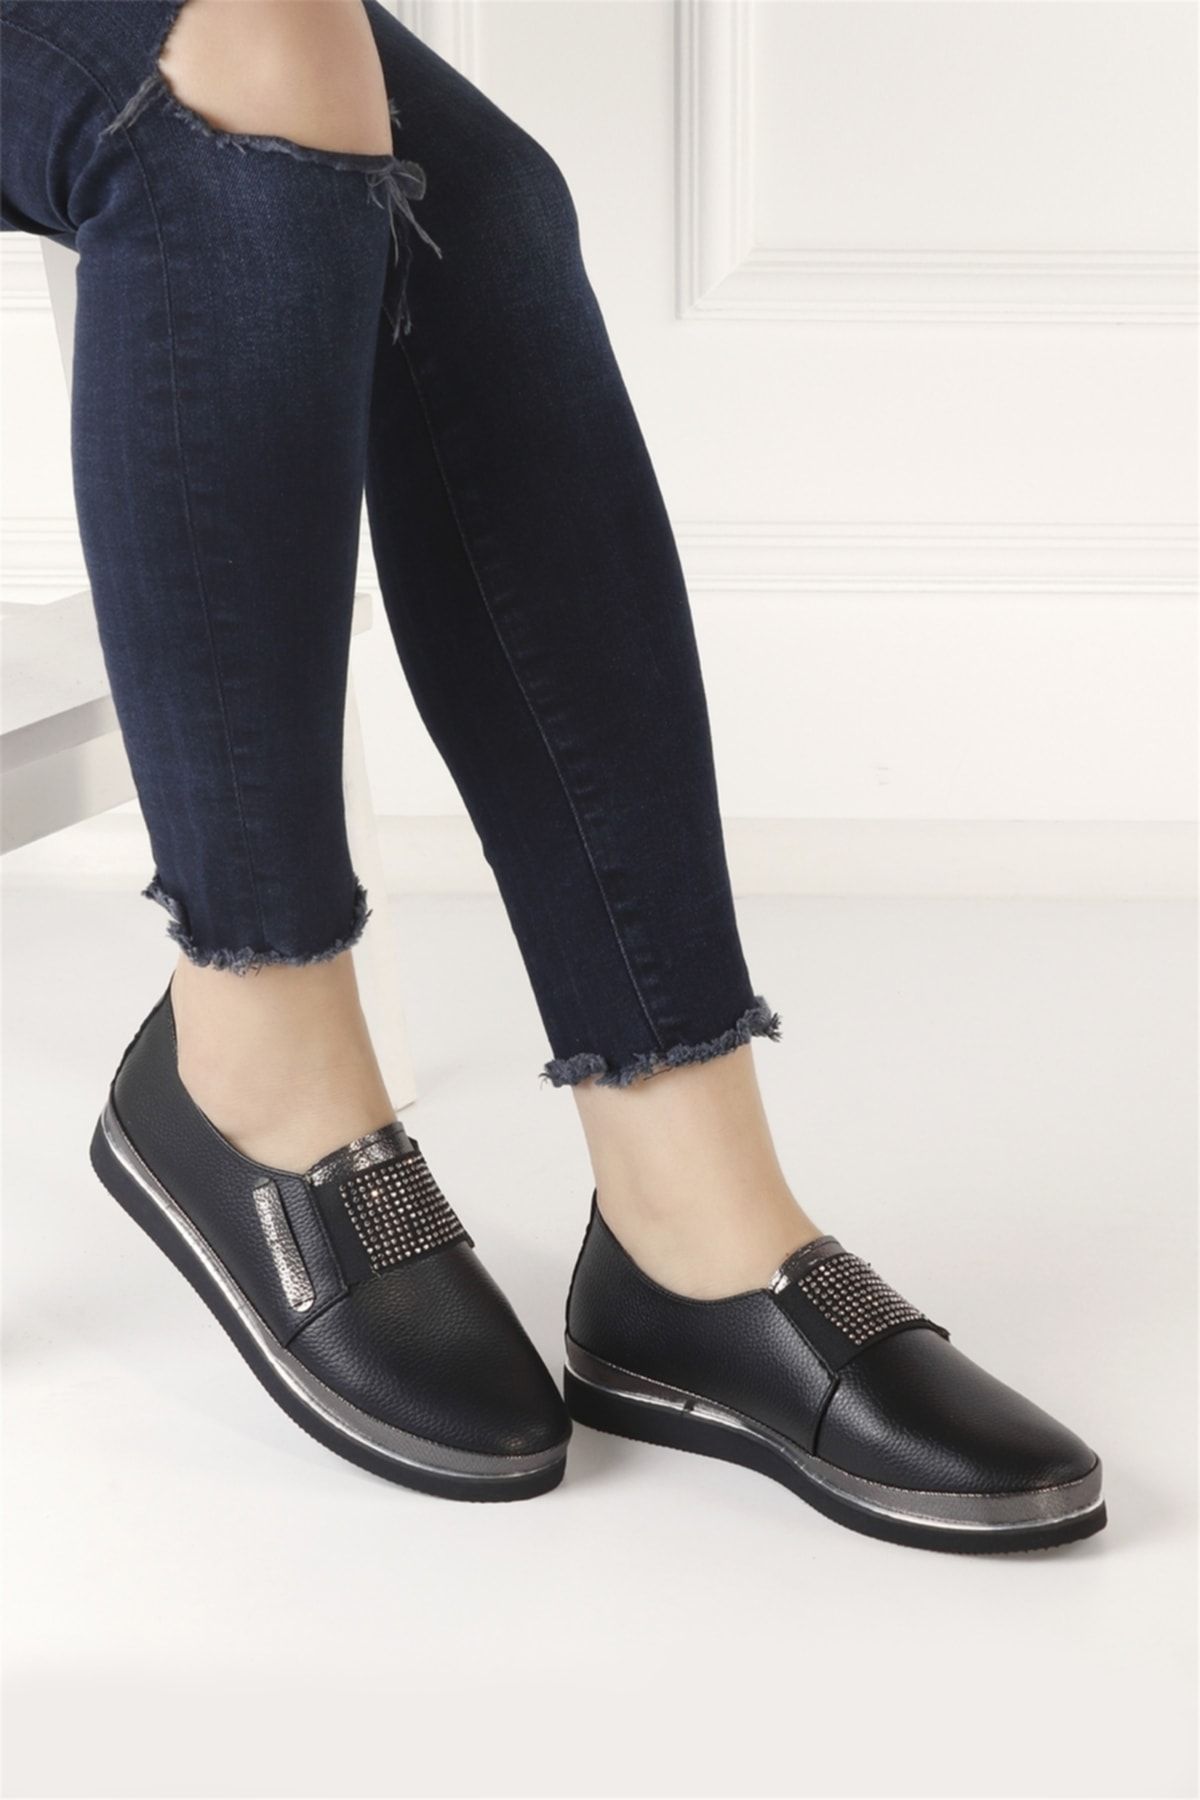 Pierre Cardin Pc-51678c Kadın Günlük Ayakkabı Siyah